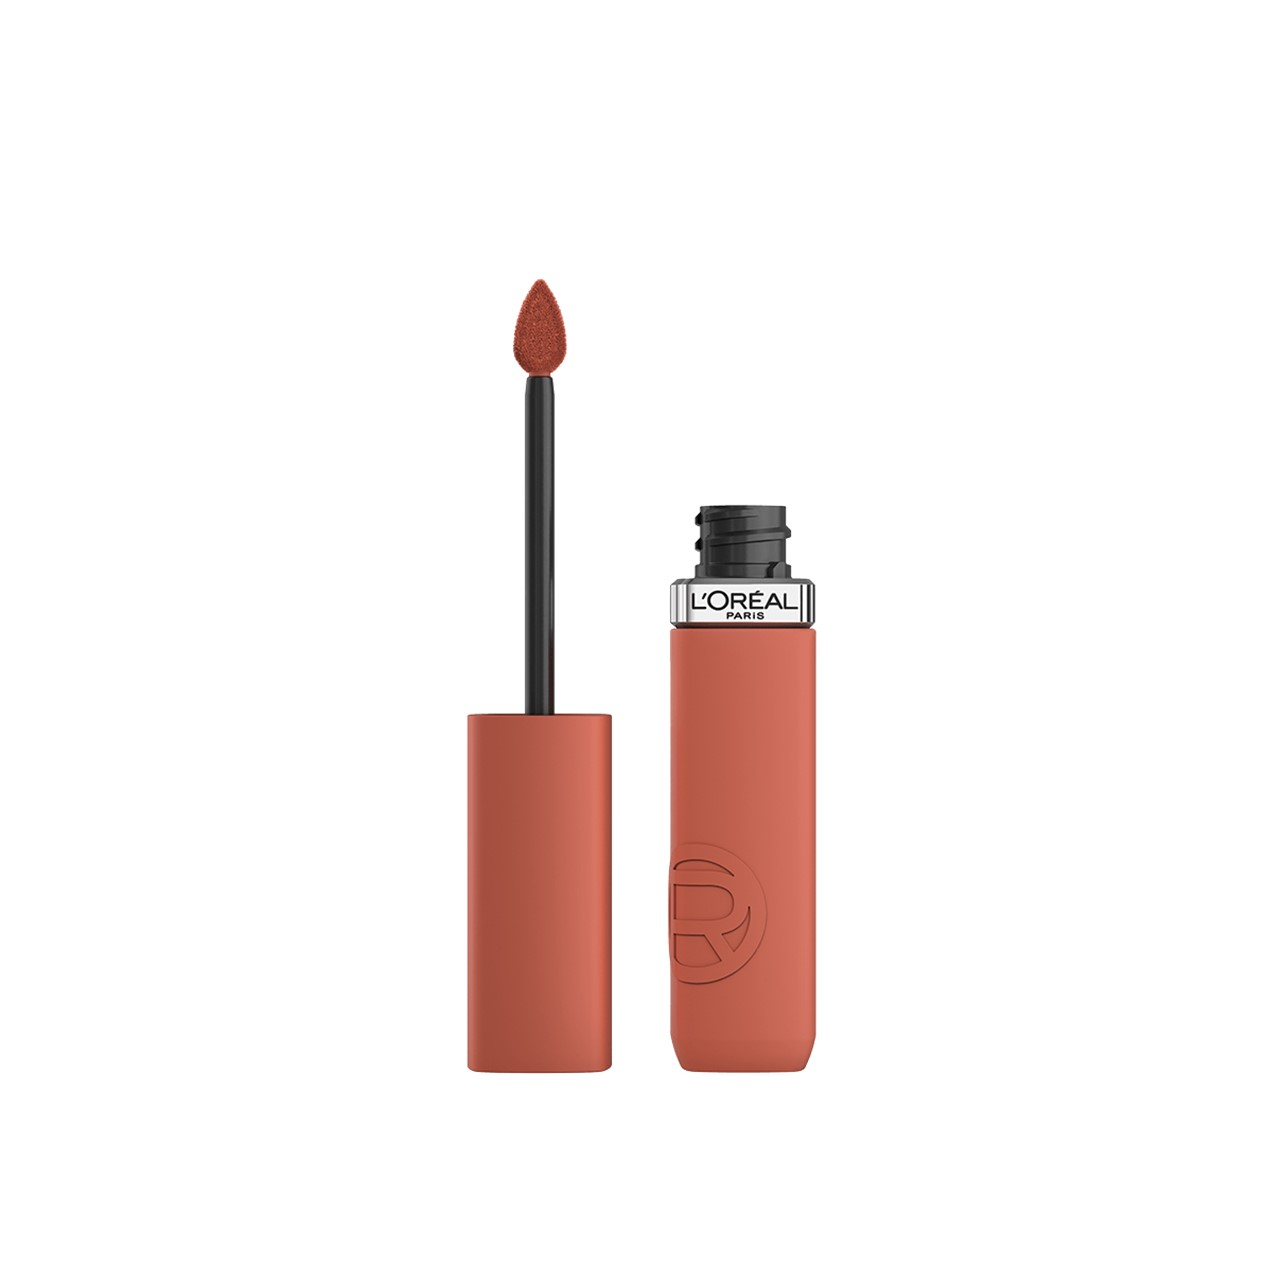 L'Oréal Paris Infallible Matte Resistance Liquid Lipstick 115 Snooze Your Alarm 5ml